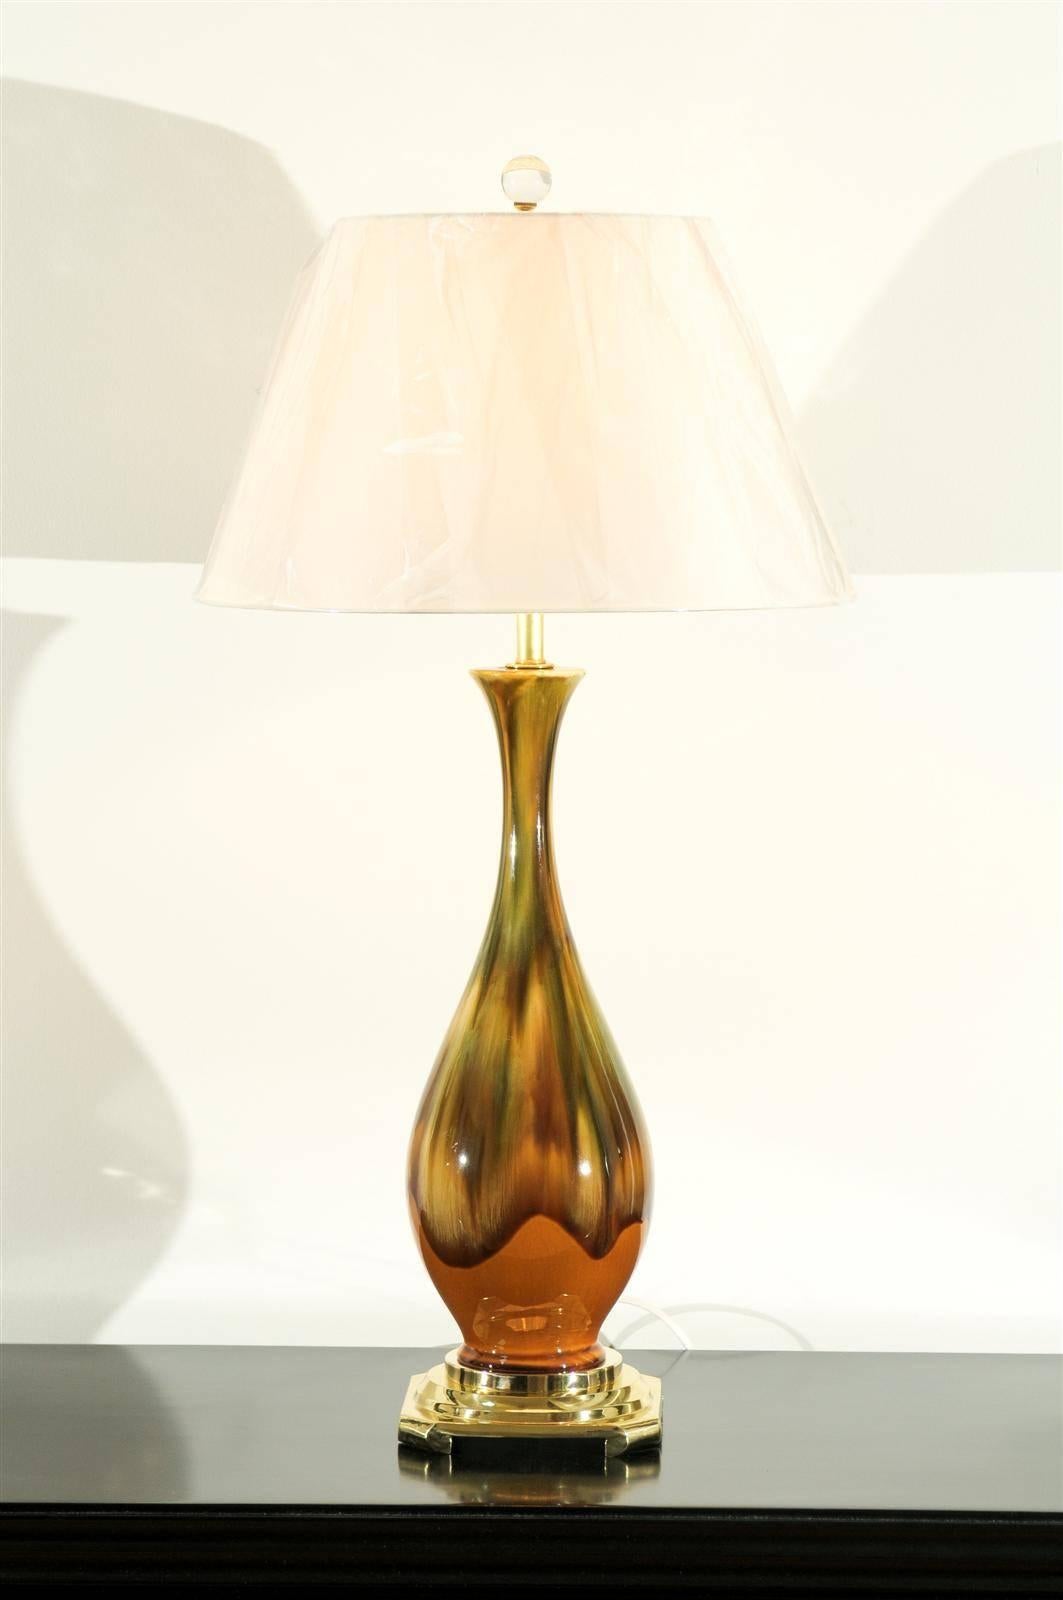 Ein hervorragendes Paar Vintage-Keramiklampen, um 1970. Tropfglasurtechnik mit einer atemberaubenden Farbkombination aus gelbem Ocker, Karamell und Grün. Wunderschön gearbeitete Stücke mit einer reichen organischen Qualität. Exquisiter Schmuck!